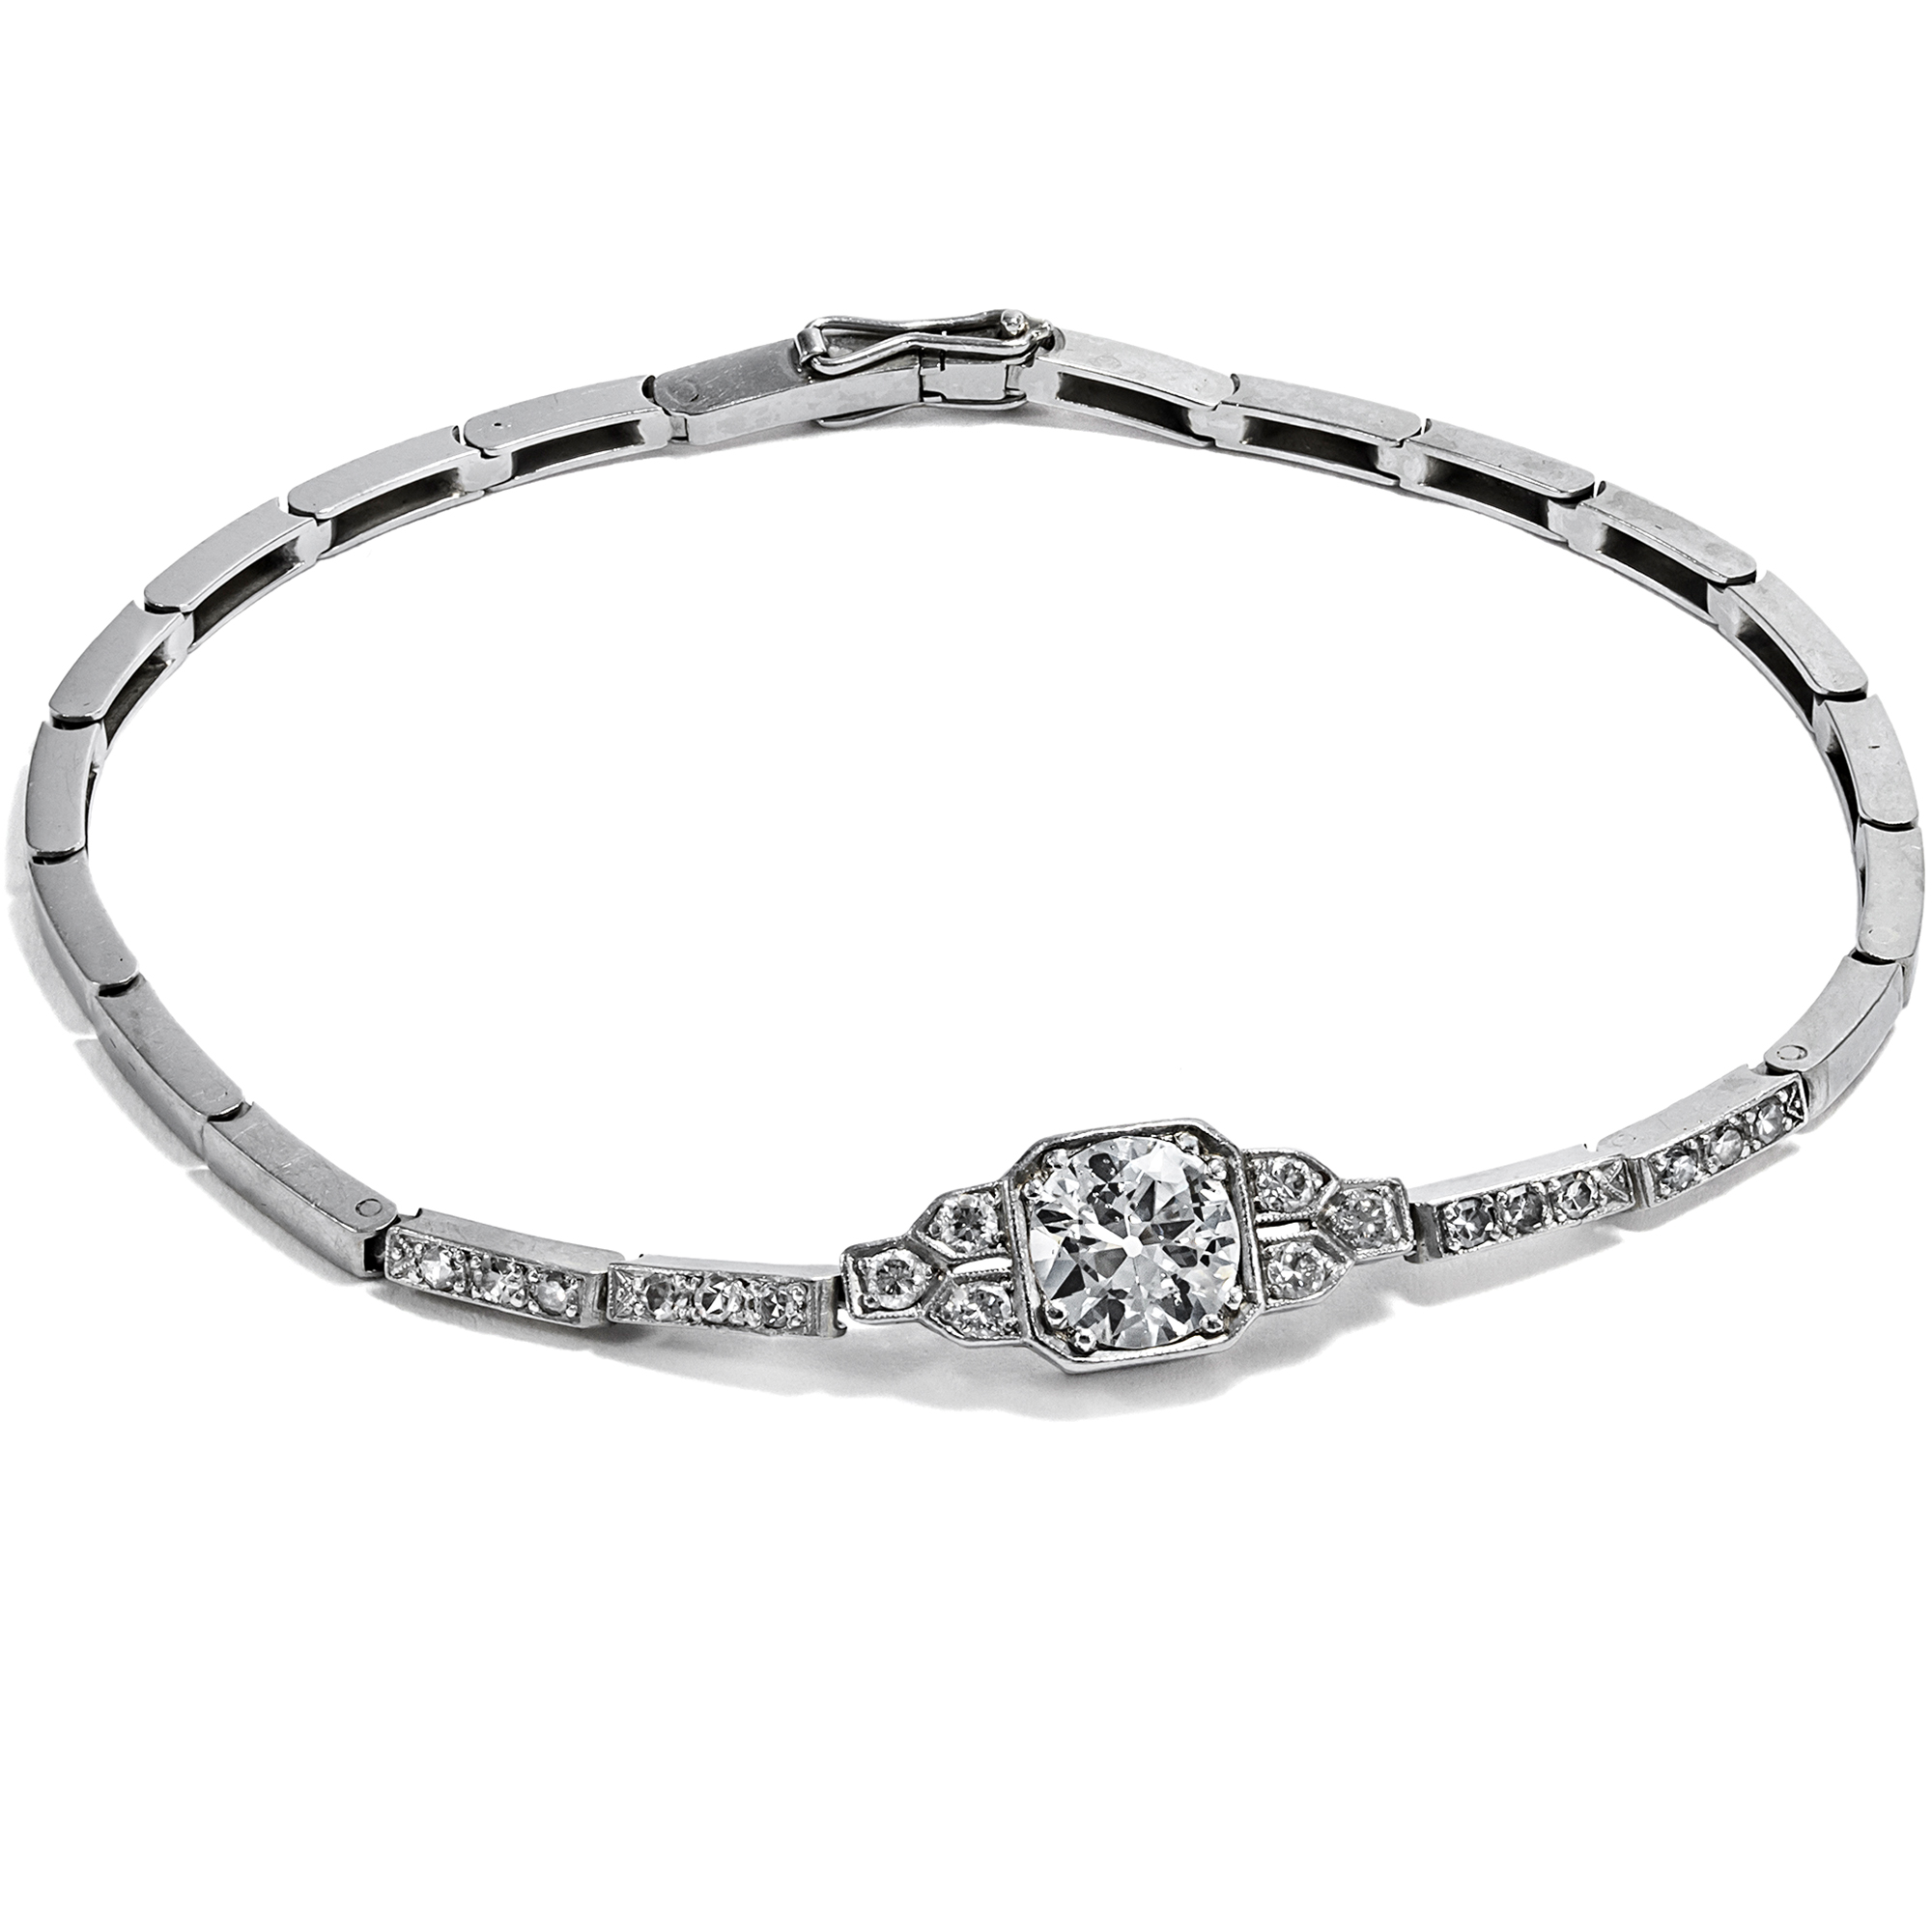 Elegant Art Deco Bracelet with Diamonds in Platinum, c. 1930